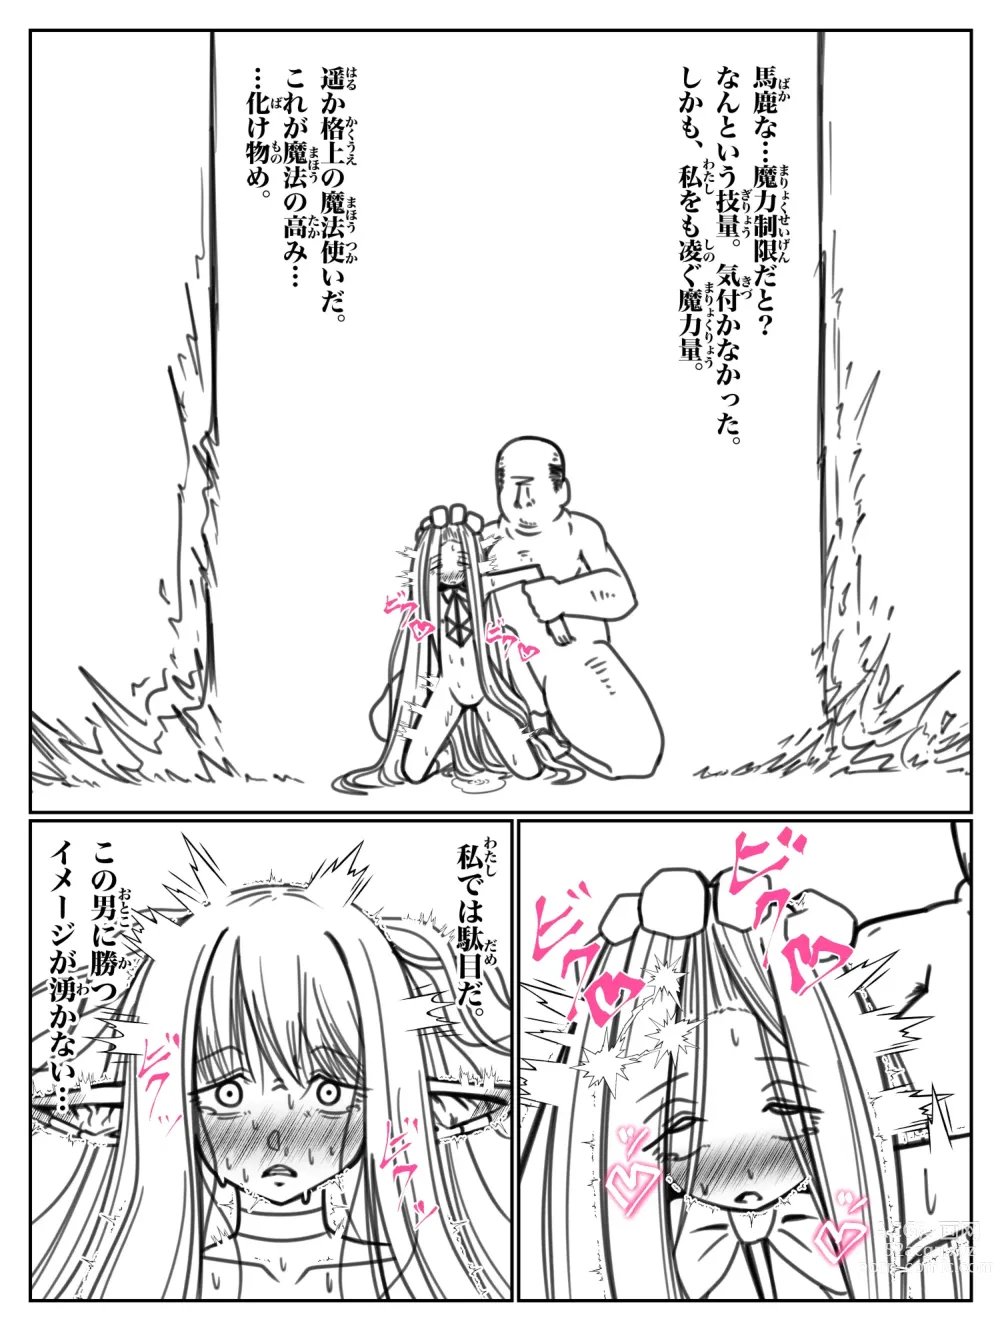 Page 12 of doujinshi Kando o 3000-bai ni suru Mahou